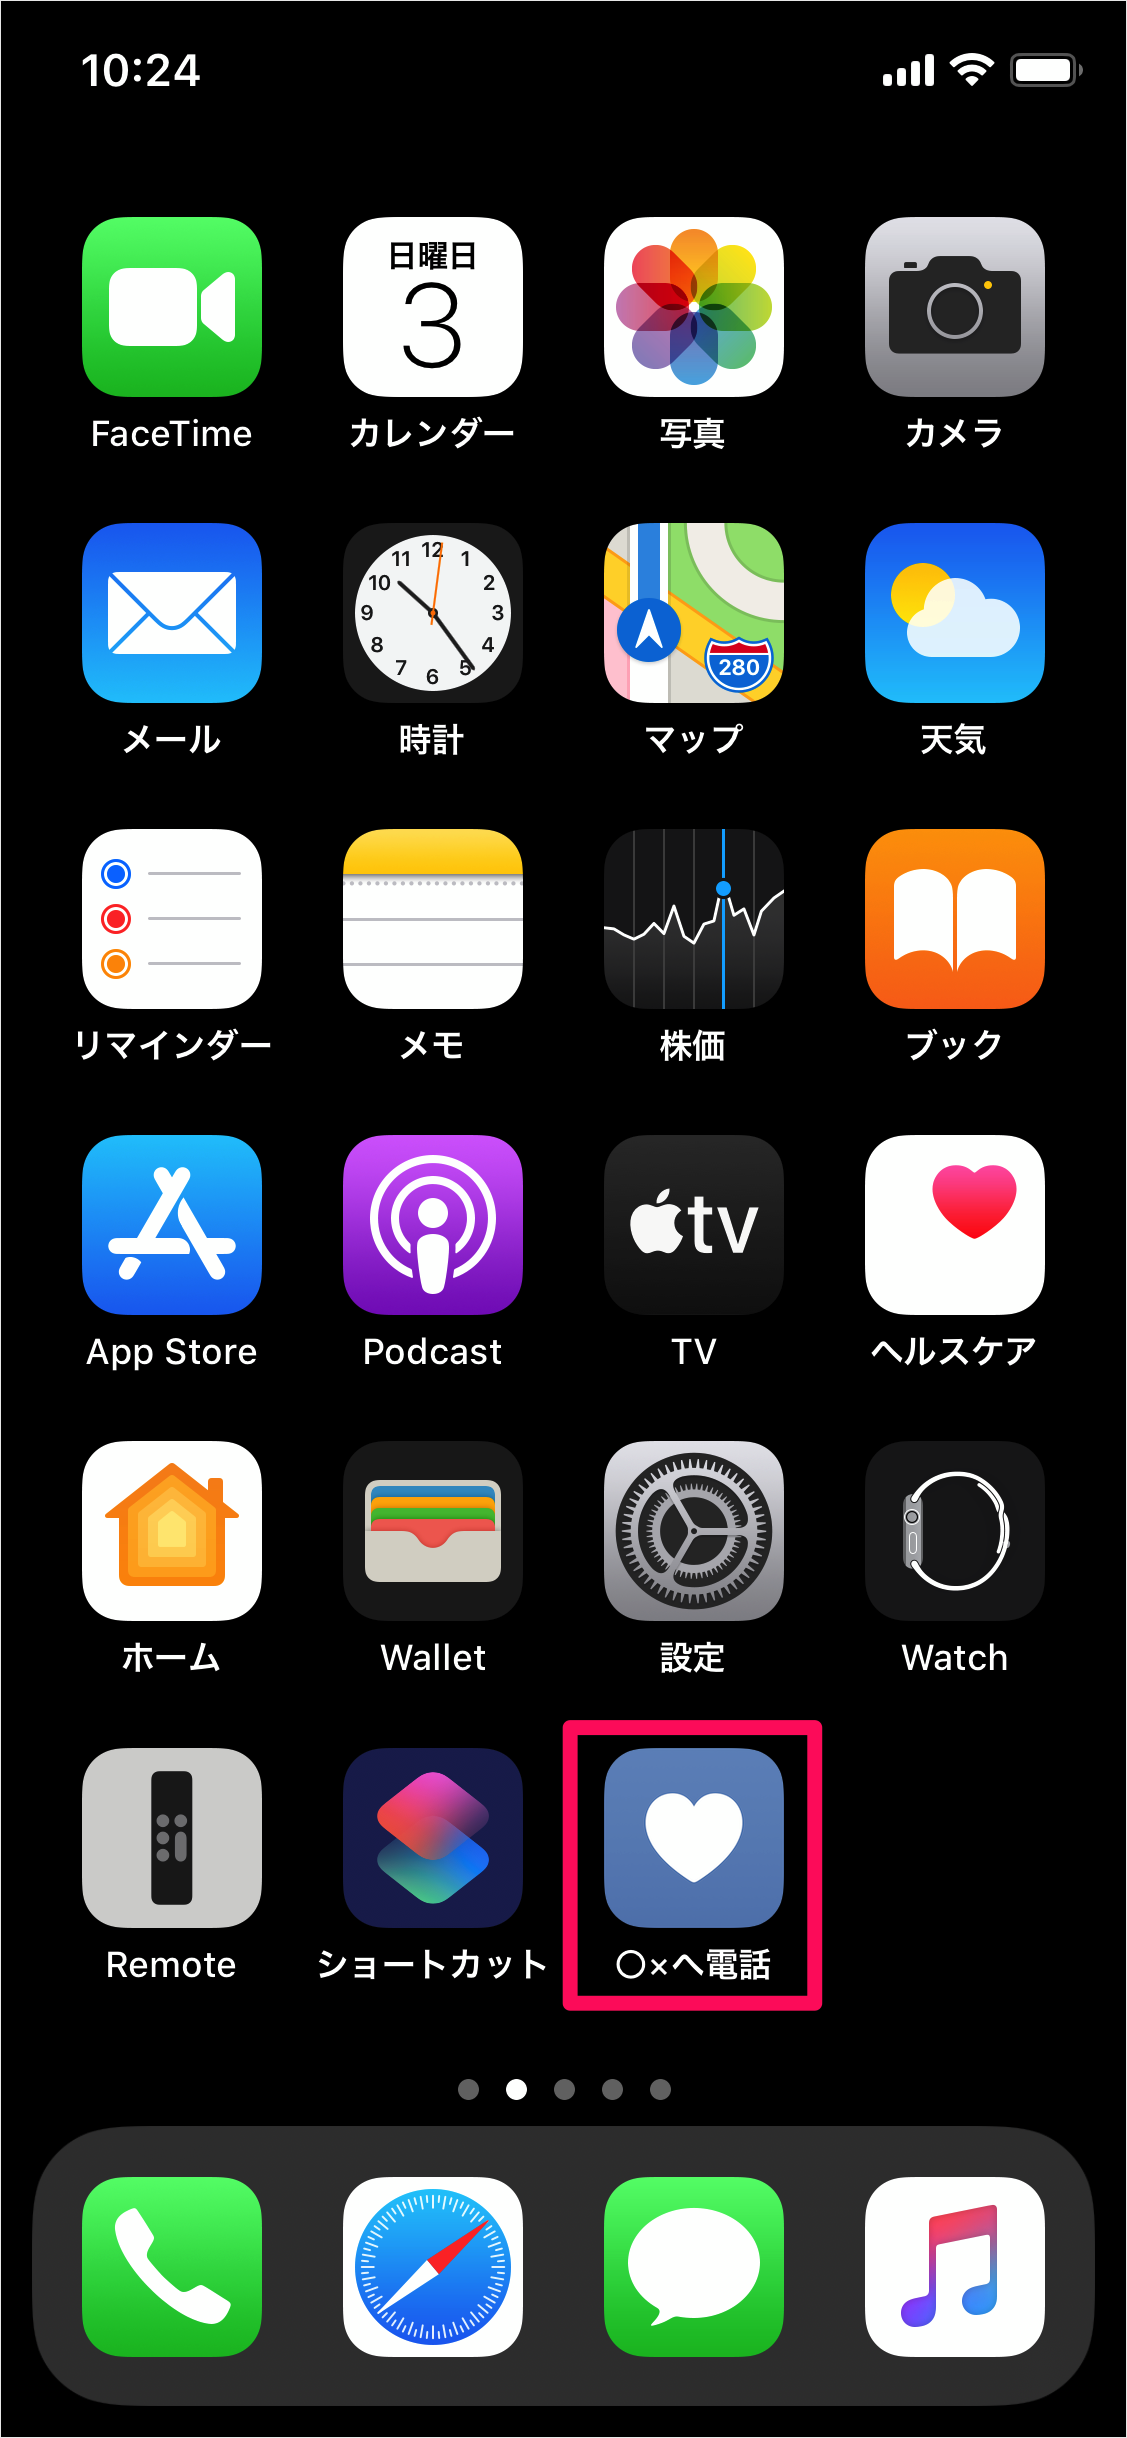 Iphone ワンタップで電話をかける ショートカットの作成 Pc設定のカルマ